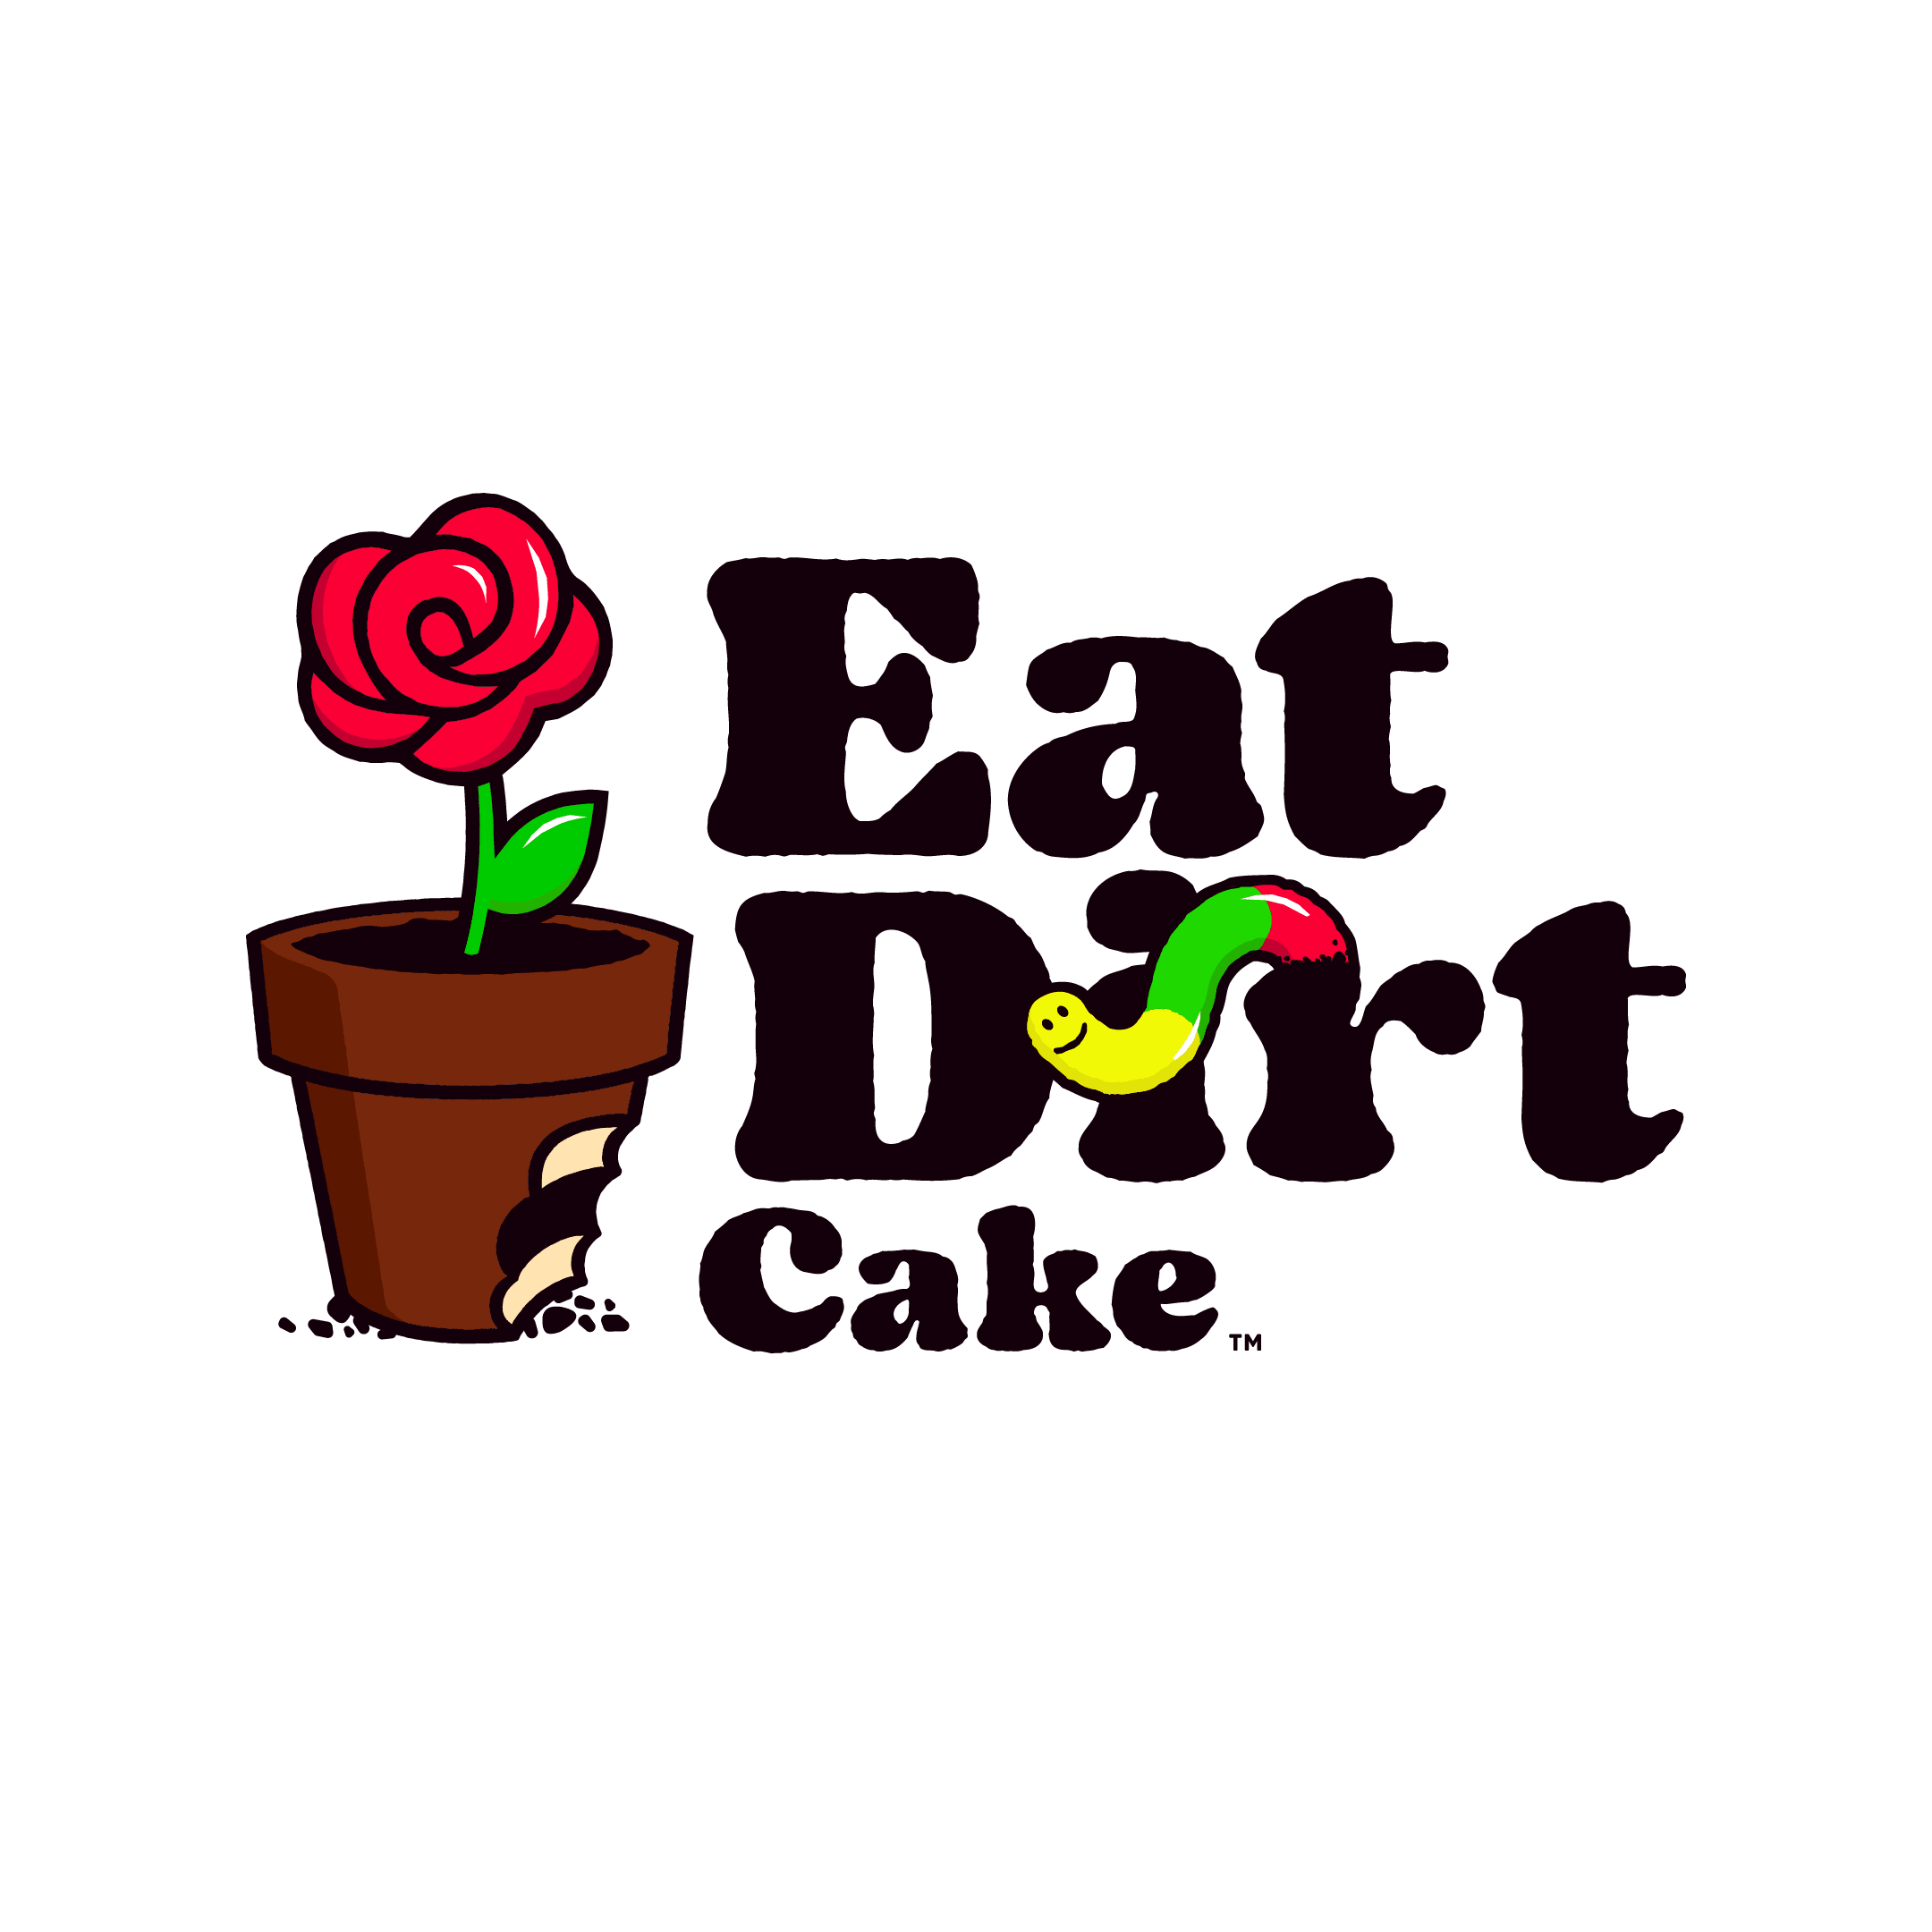 Eat Dirt Cake